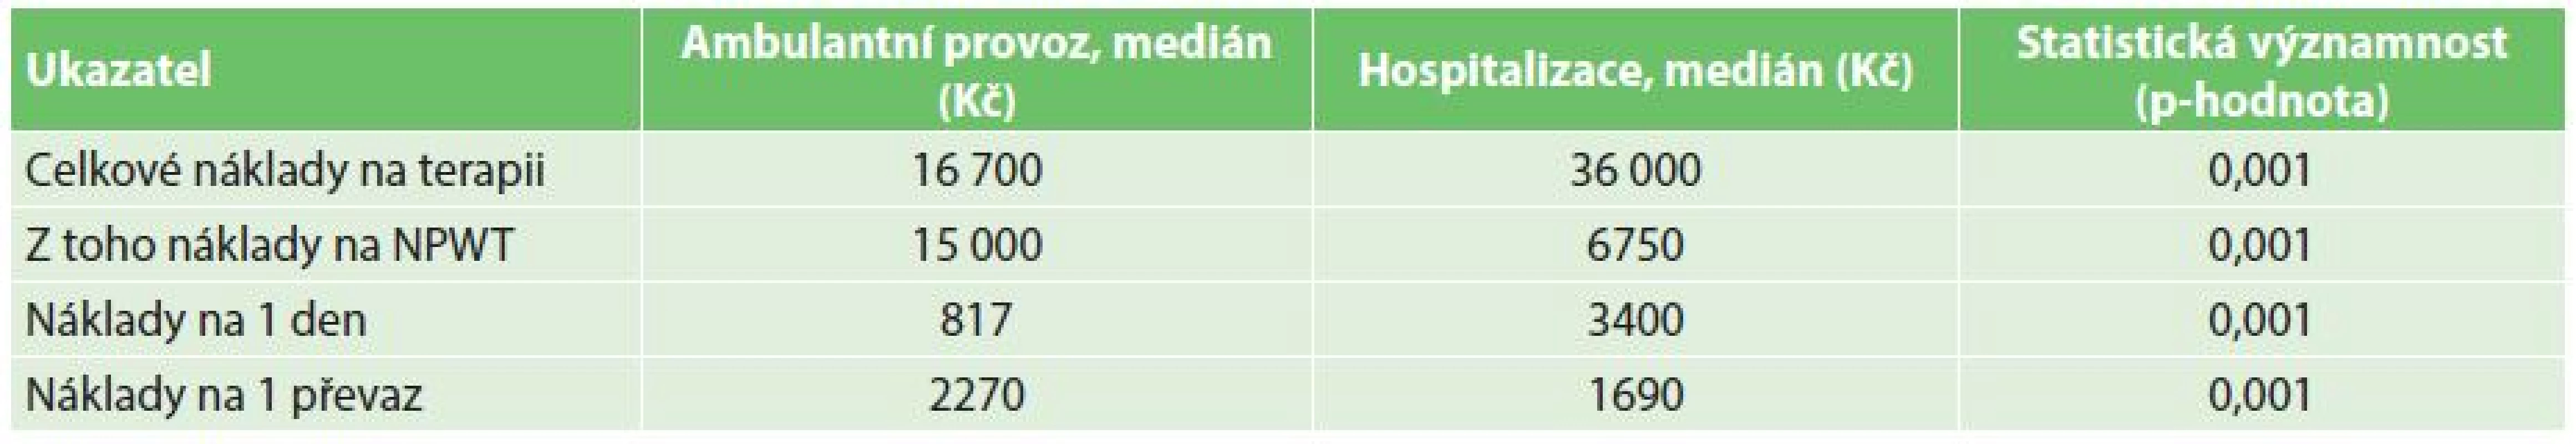 Analýza nákladů na podtlakovou terapii za hospitalizace a ambulantně
Tab 5: Cost analysis of negative pressure treatment in outpatient and inpatient settings